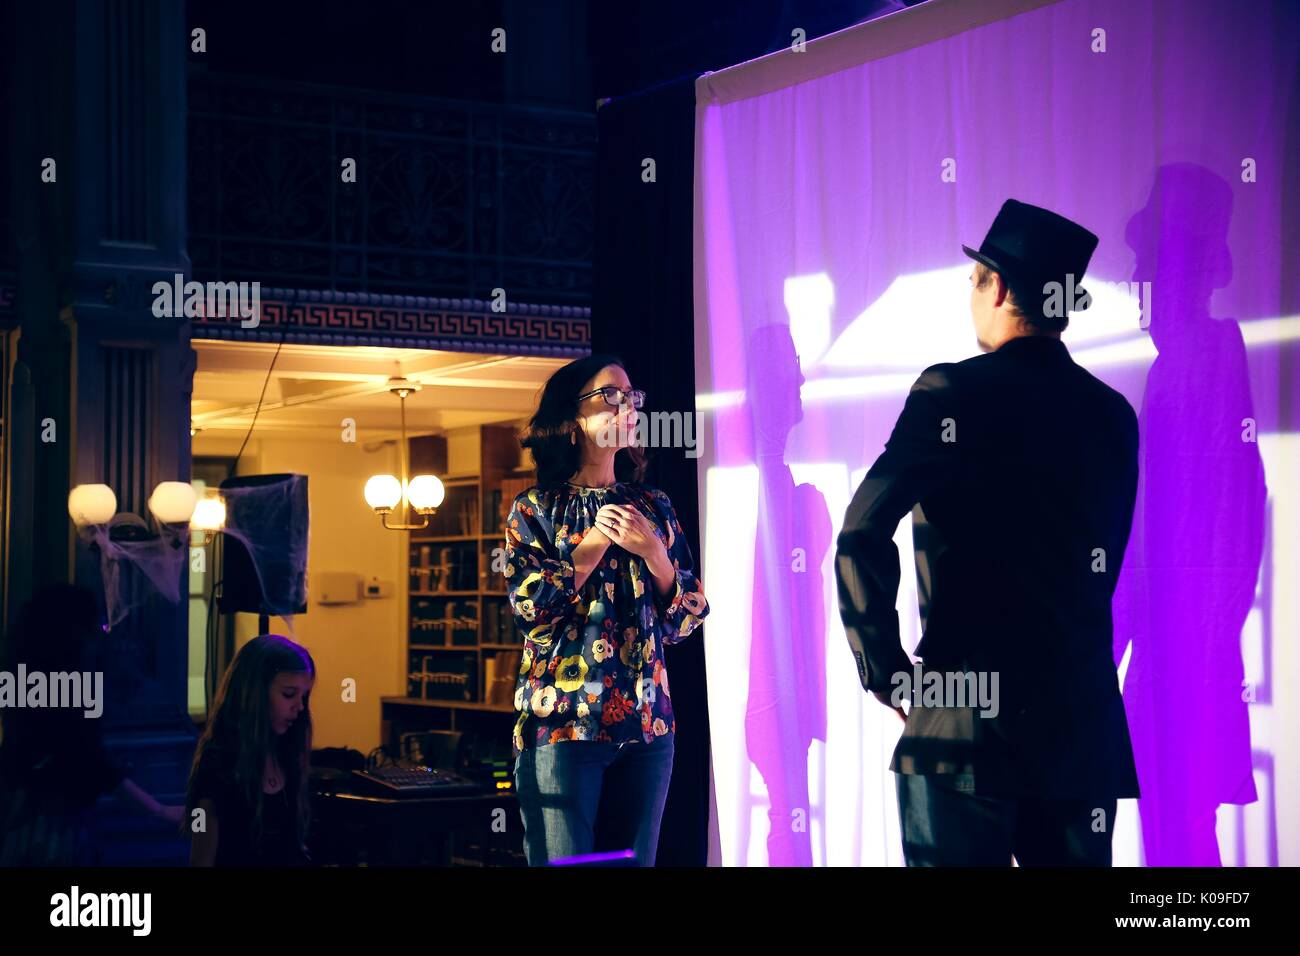 Ein Mann in Anzug und Hut und eine Frau in normaler Kleidung sind auf einer Bühne, Scheinwerfer sind auf Sie und Sie sind vor einem weißen Tuch Bildschirm, ihre Schatten erfasst, sie sind auf der Suche nach einander, 2015. Mit freundlicher Genehmigung von Eric Chen. Stockfoto